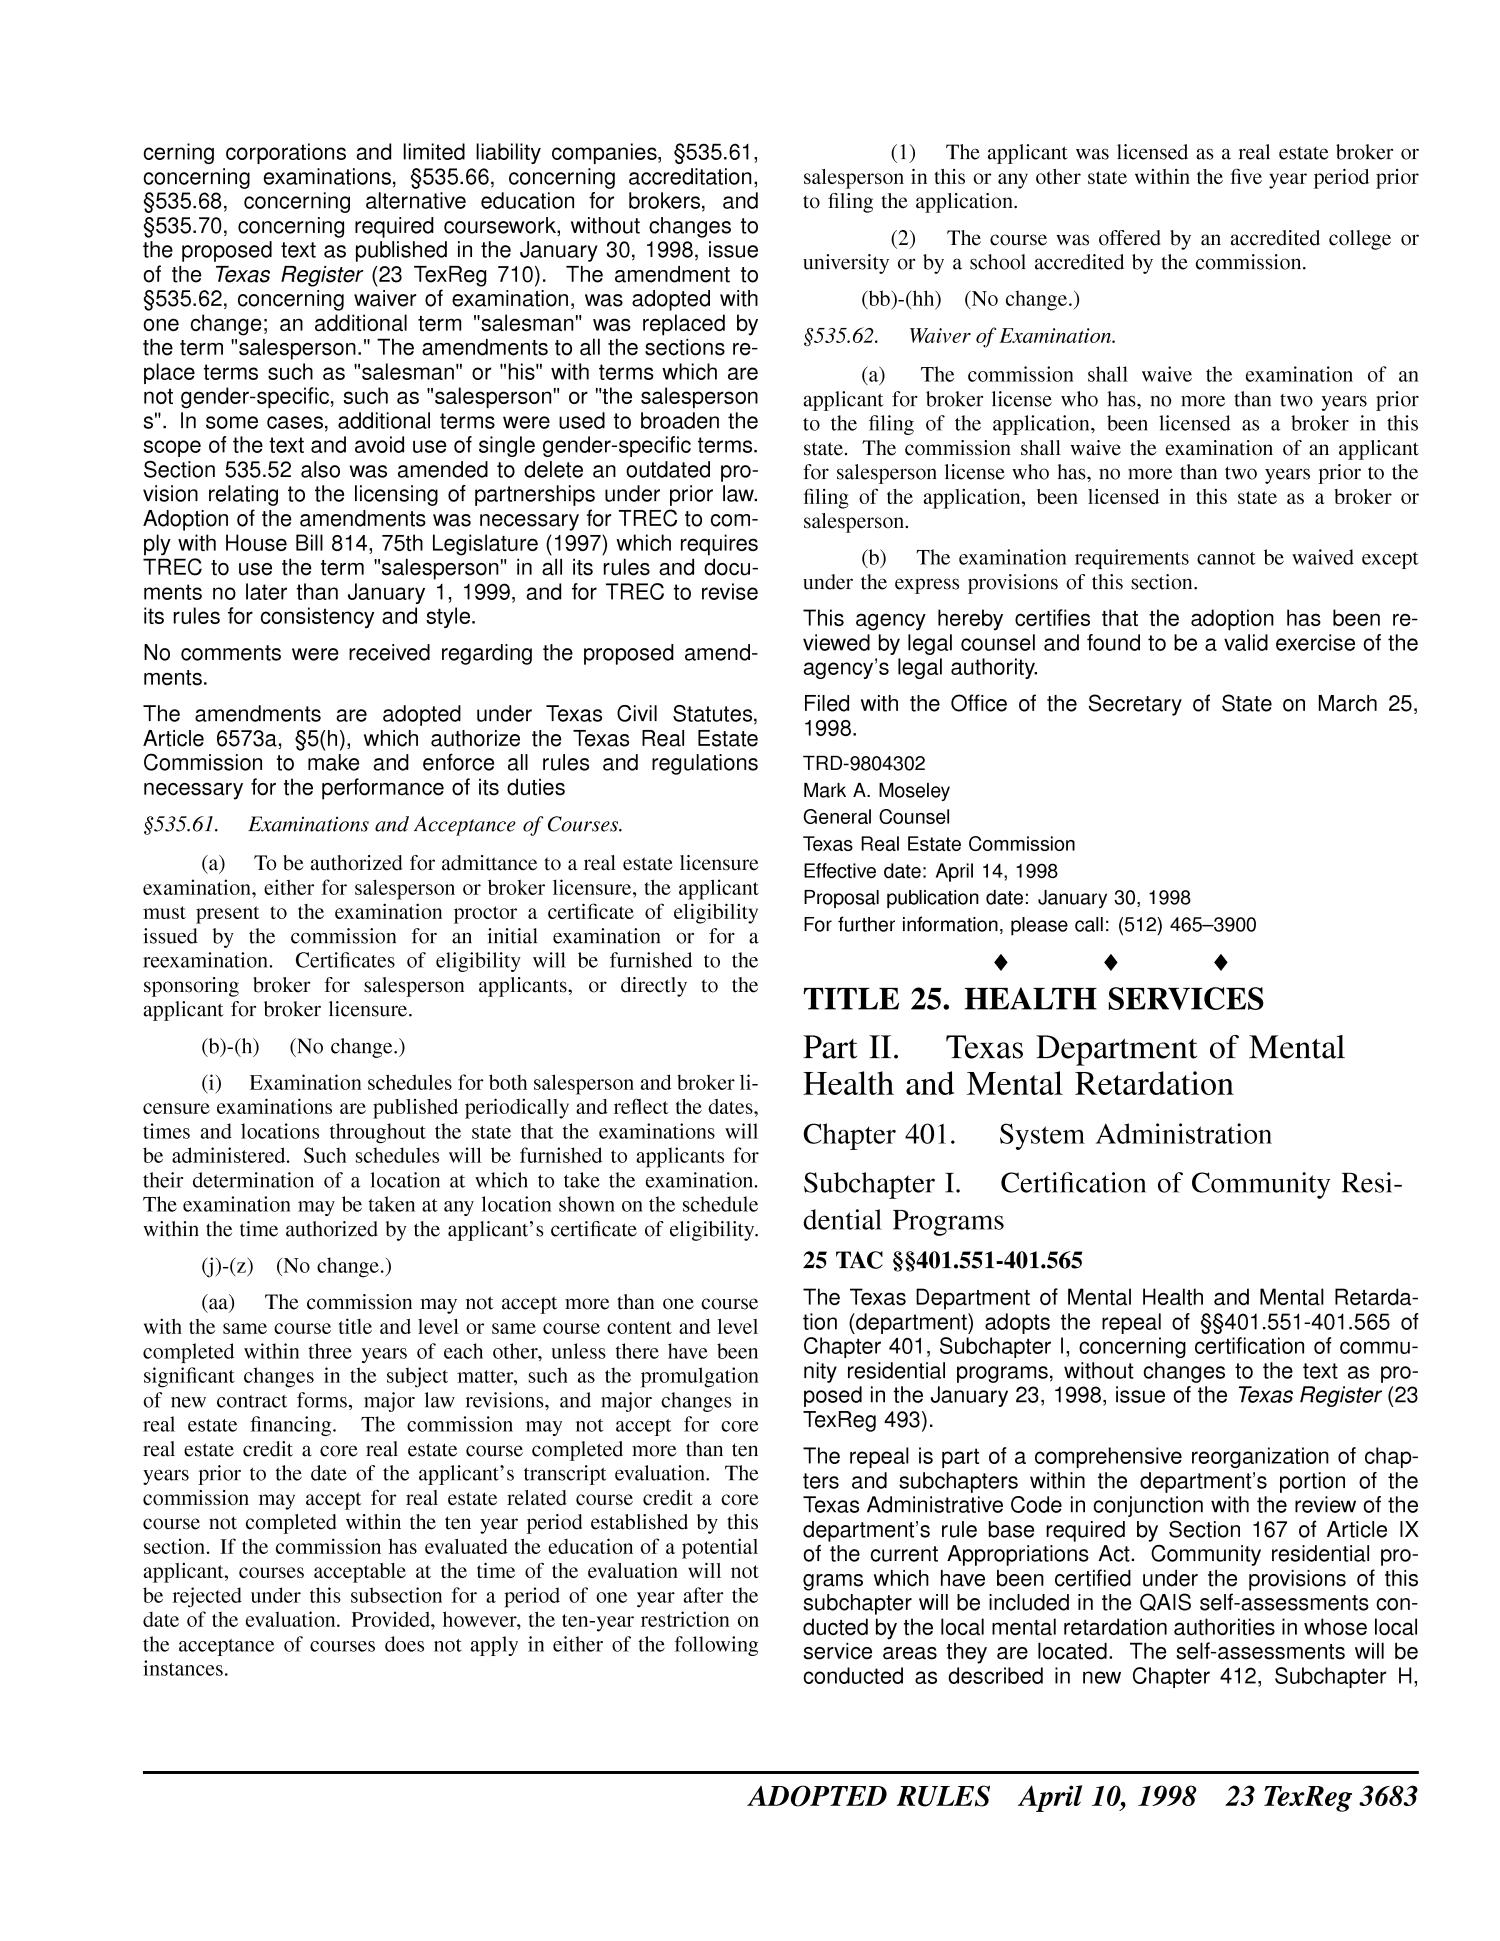 Texas Register, Volume 23, Number 15, Pages 3631-3764, April 10, 1998
                                                
                                                    3683
                                                